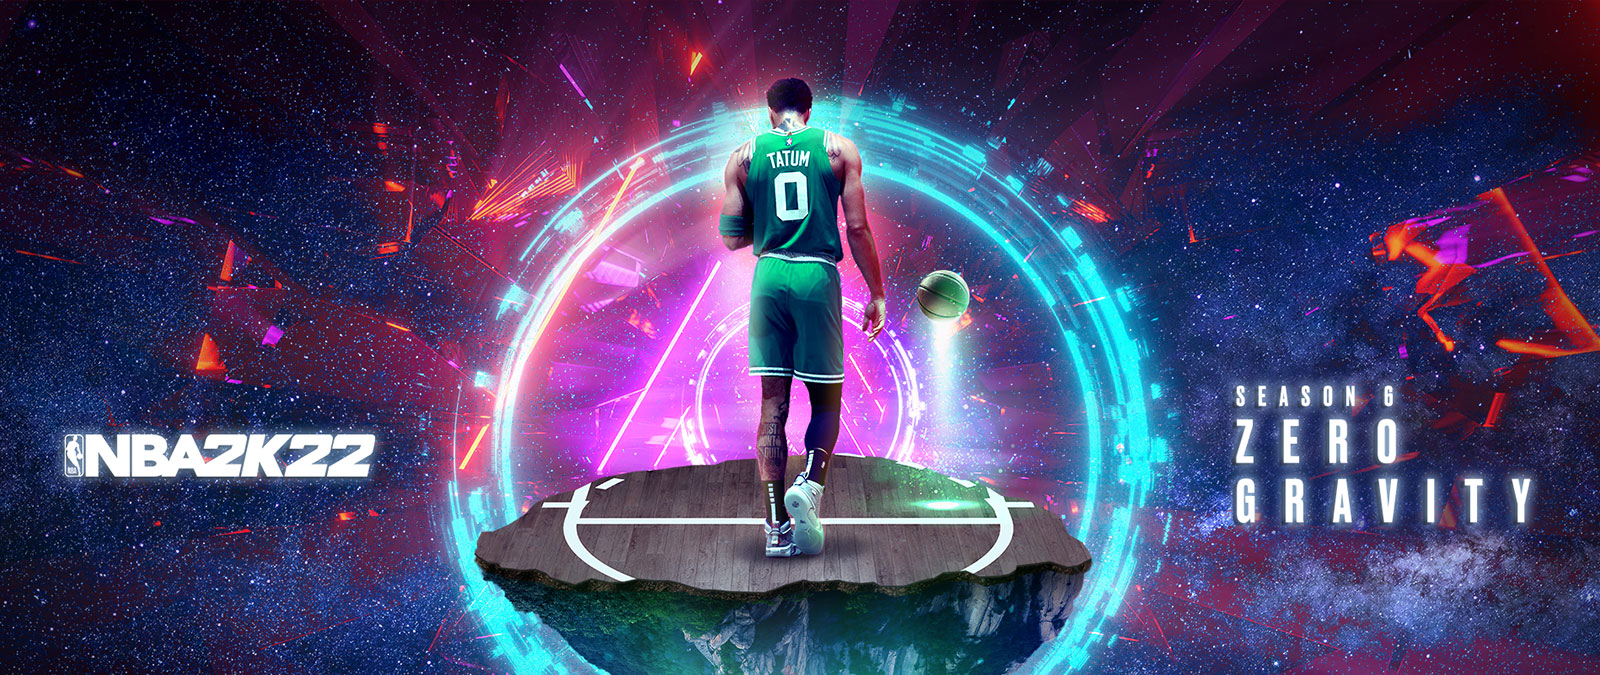 NBA 2K22, Season 6 Zero Gravity, Tatum står på et svævende stykke basketball-bane i rummet med ringe af energi omkring sig.